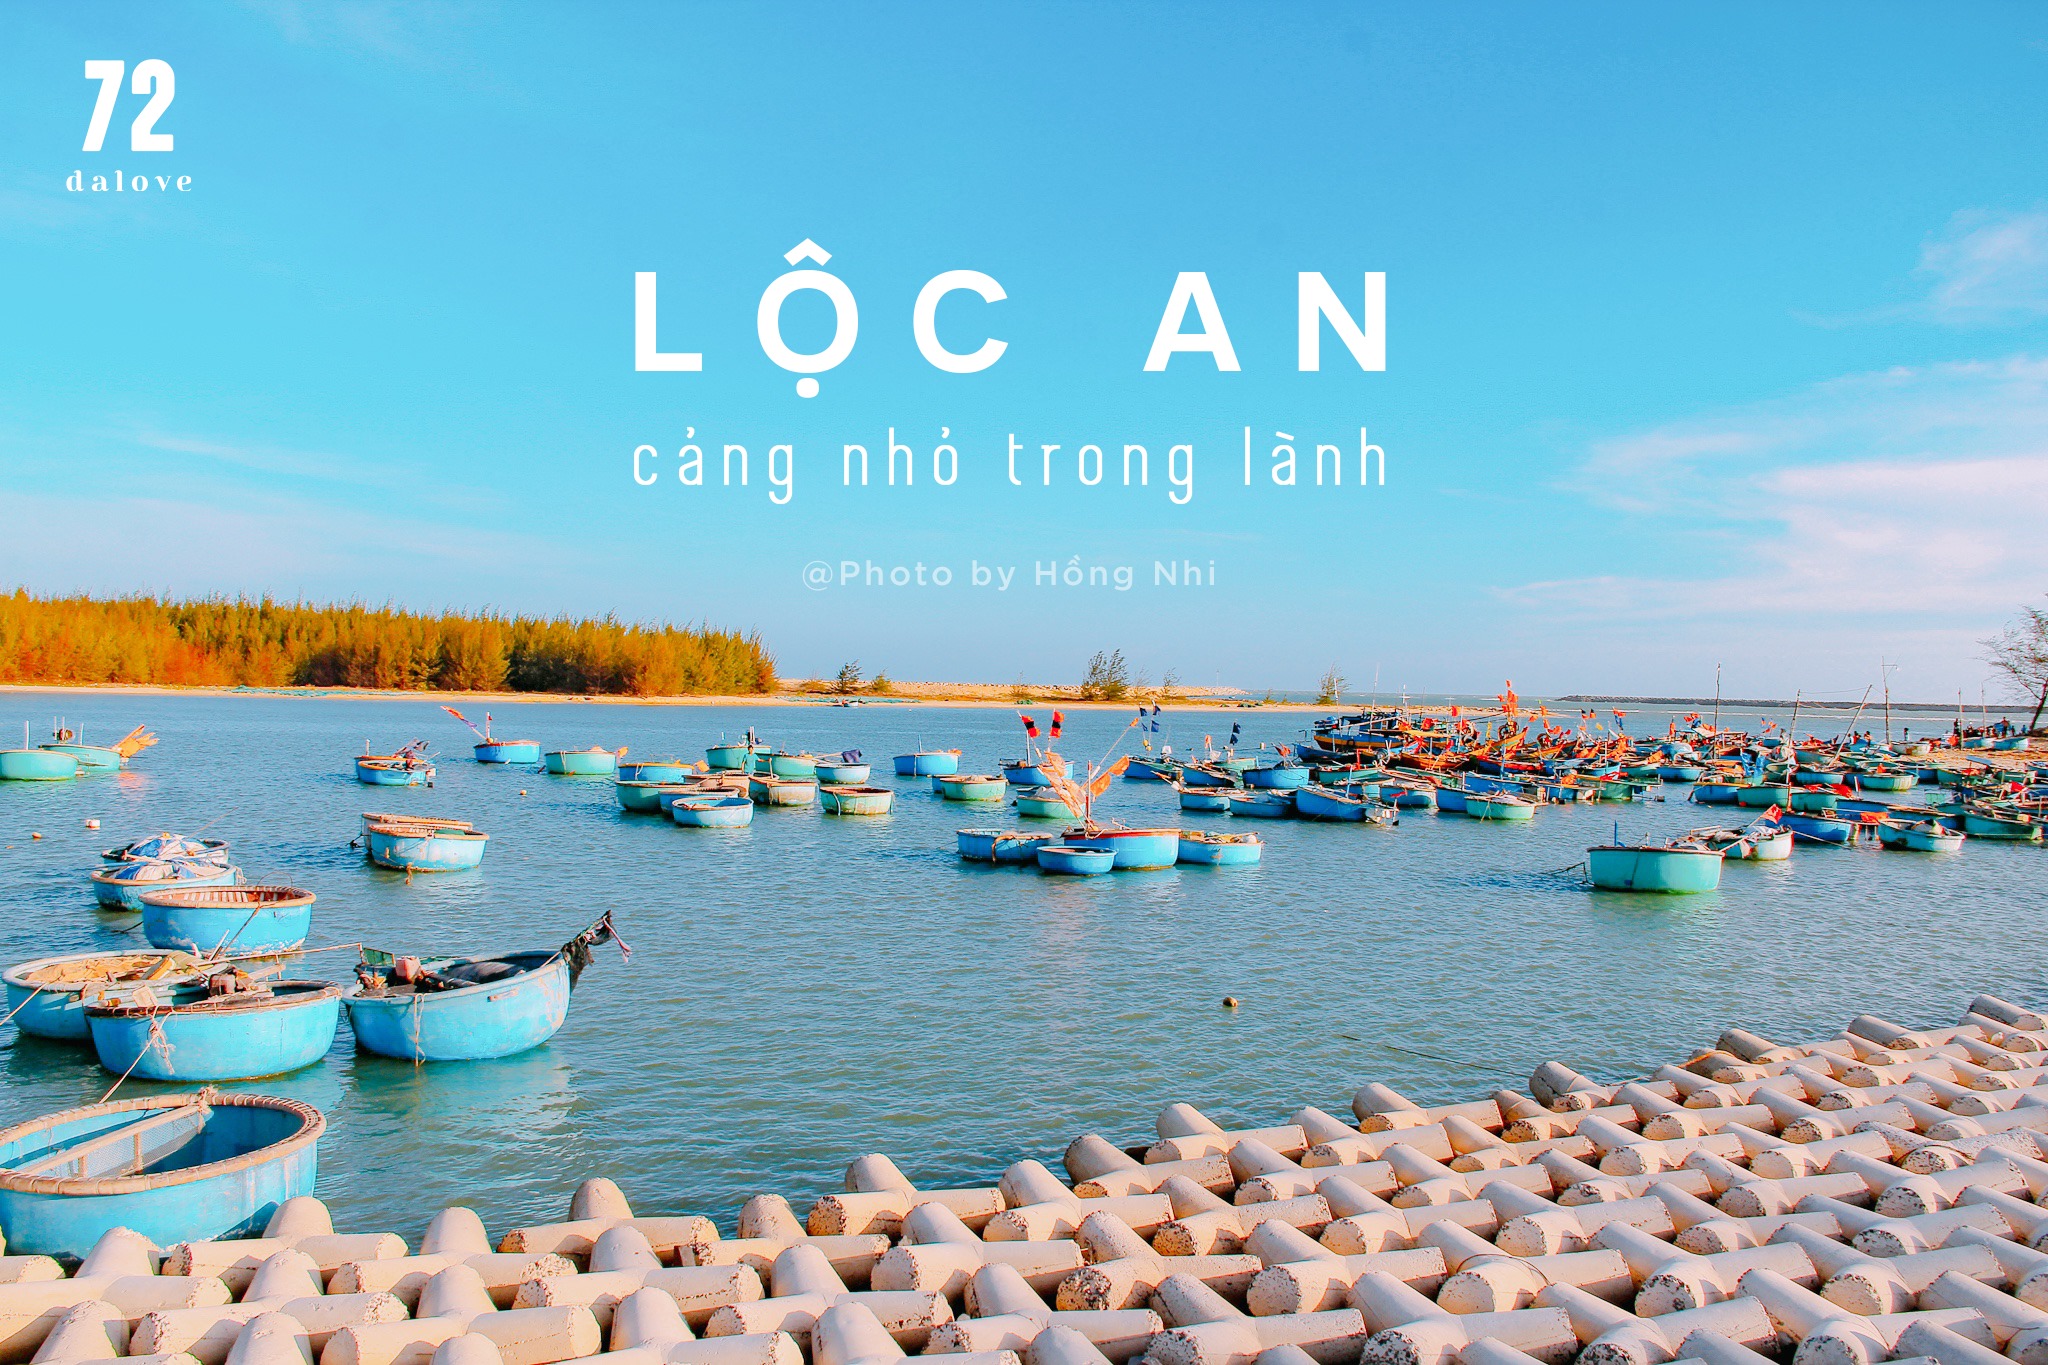 Biển Lộc An – Yêu Vũng Tàu – YeuVungTau.com